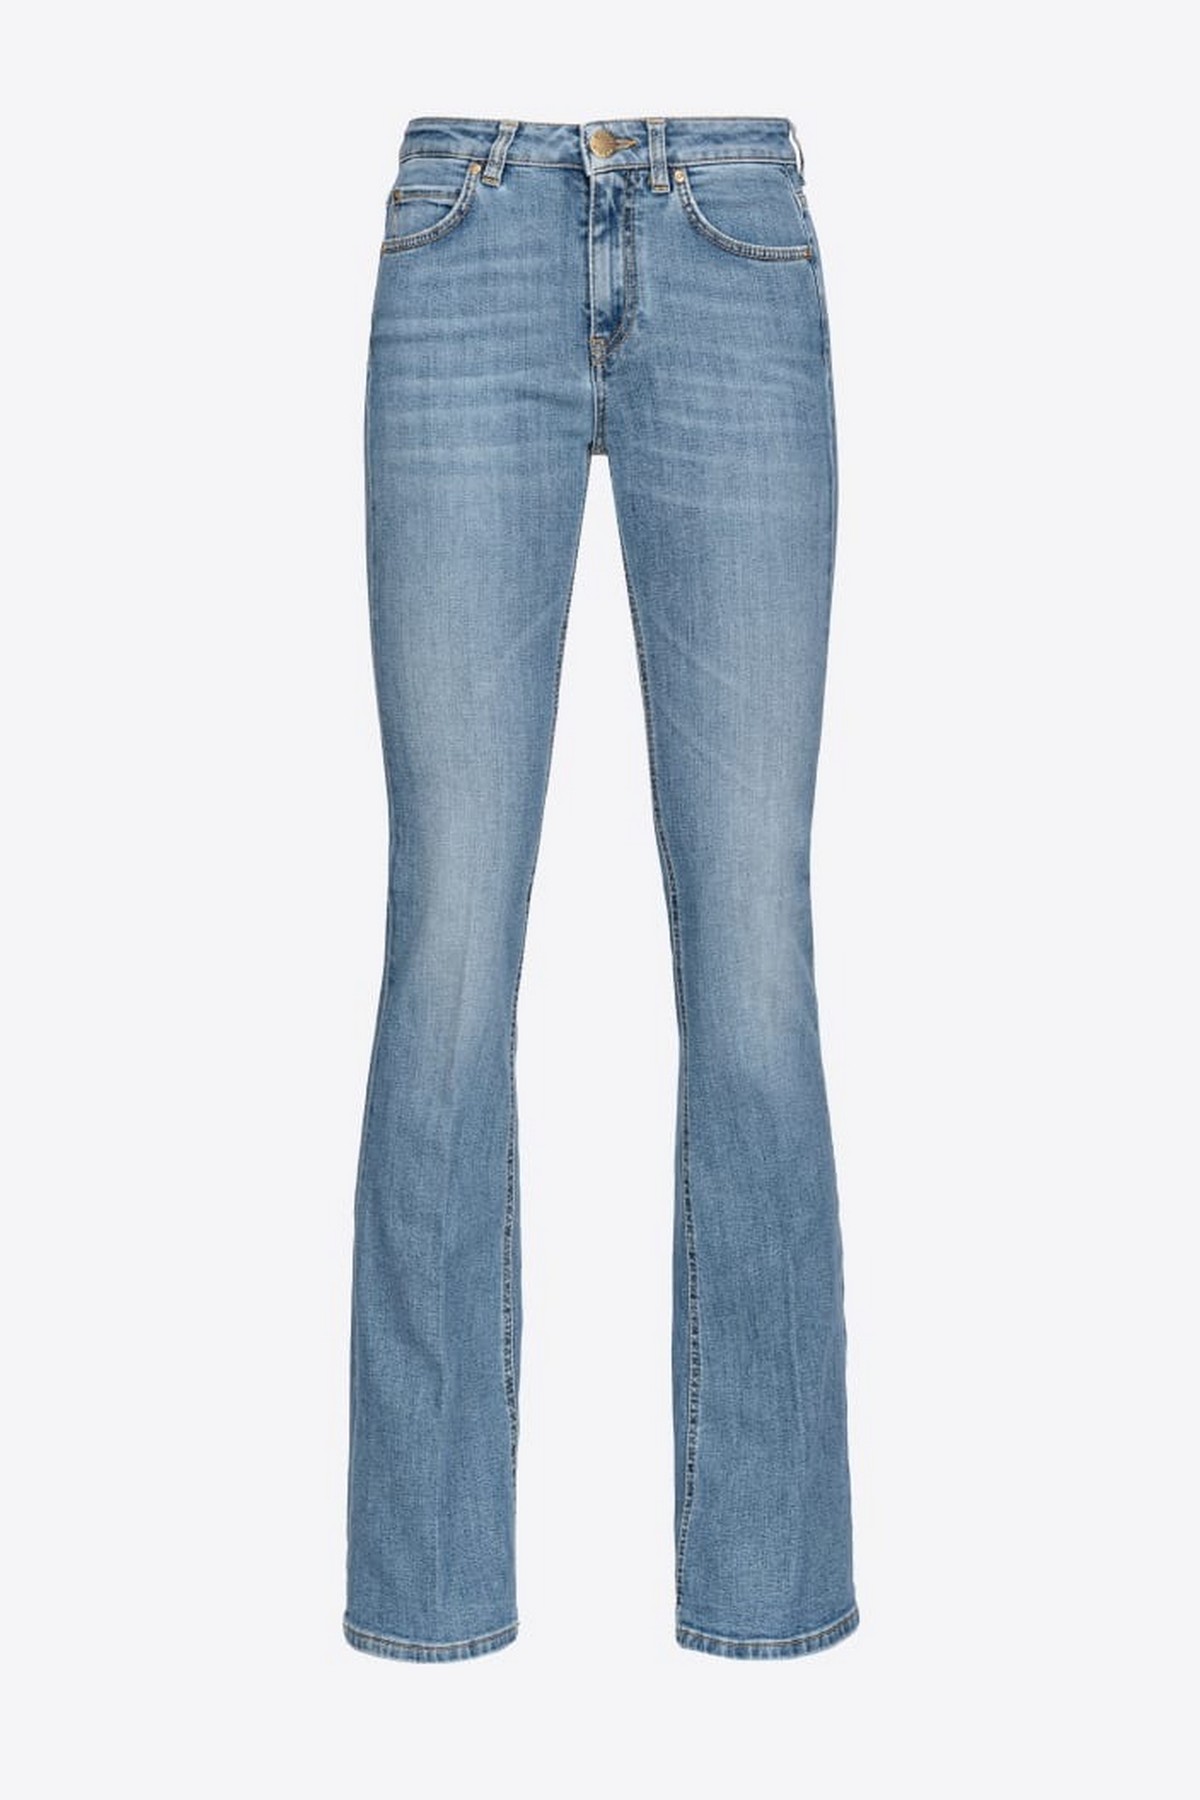 Broek jeans pinko logo in de kleur blauw van het merk Pinko